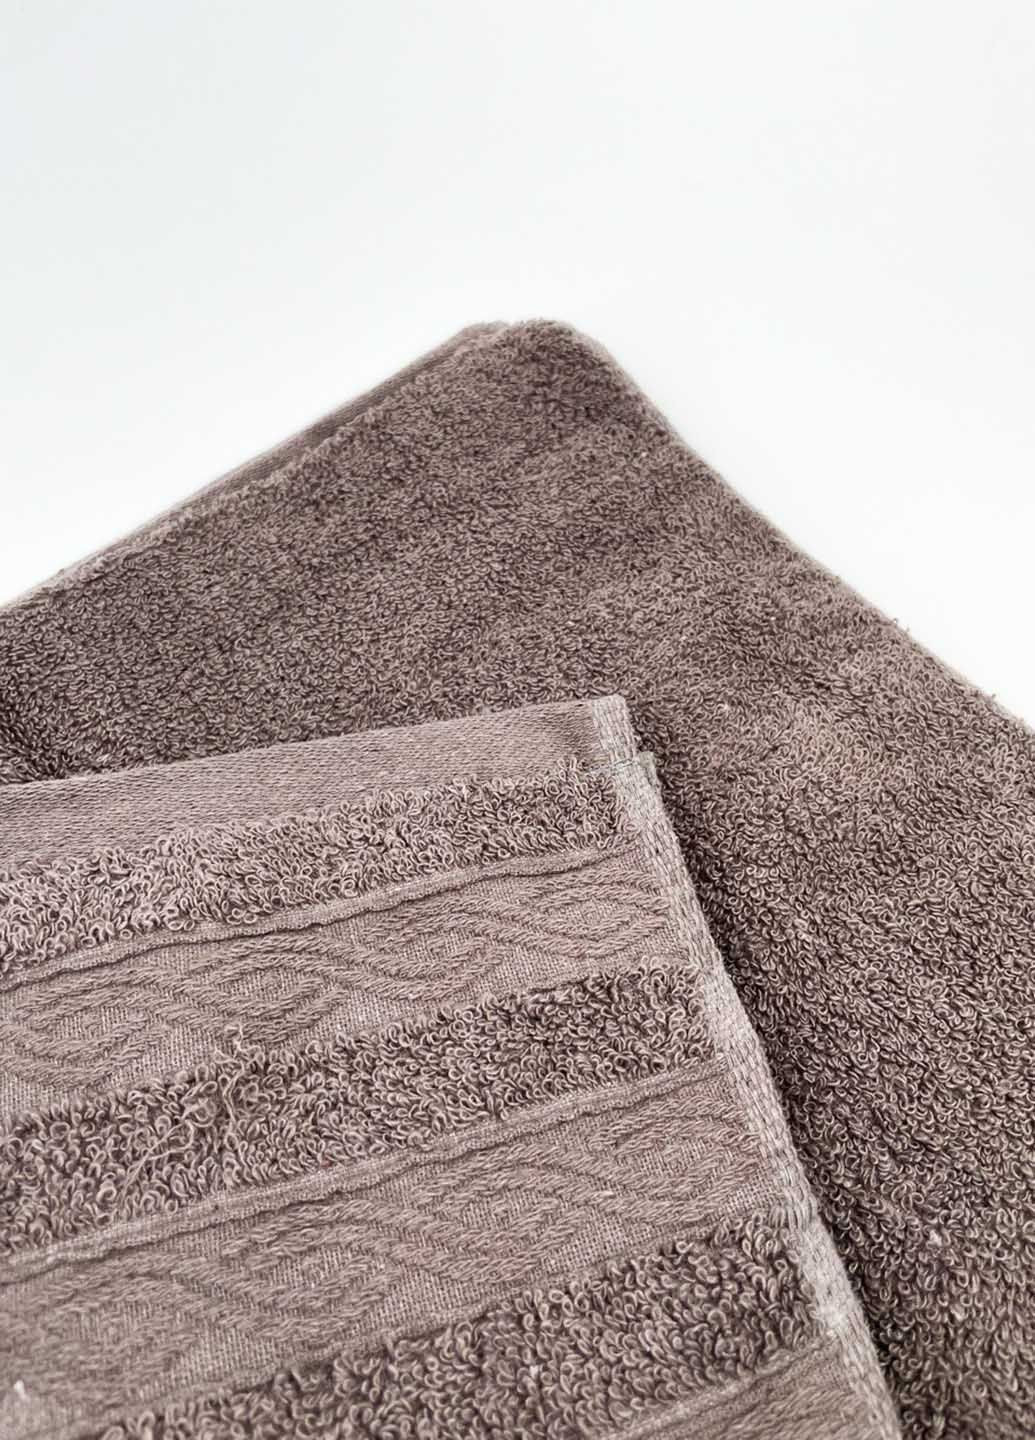 Homedec полотенце банное махровое 140х70 см абстрактный темно-бежевый производство - Турция